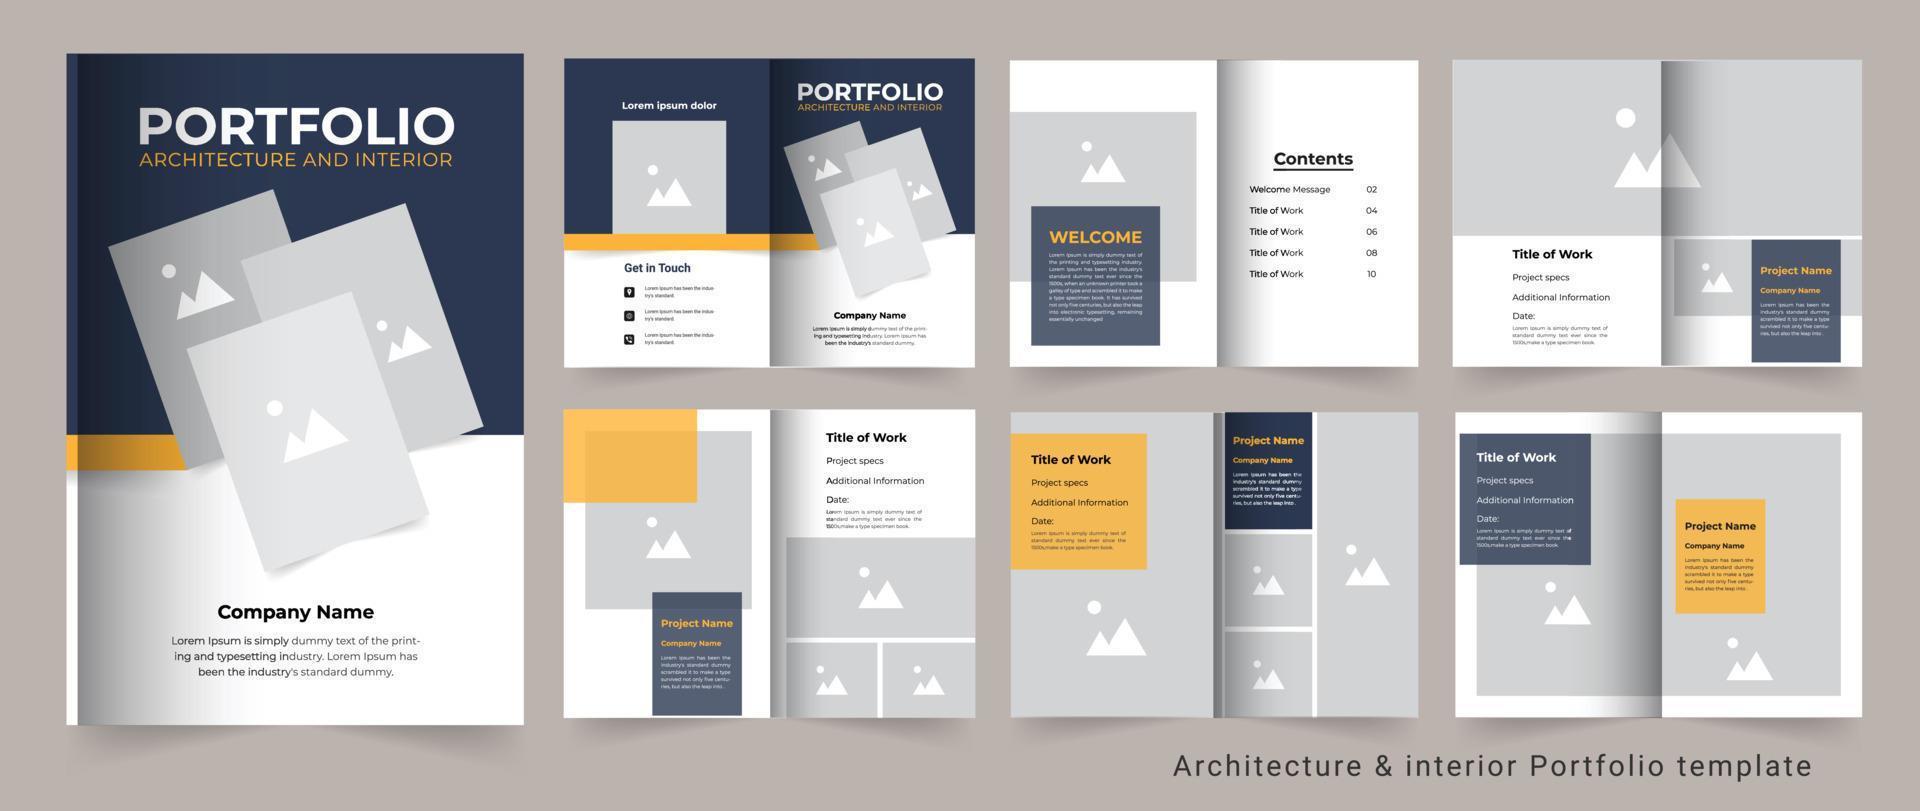 Portfolio design or architecture portfolio or interior portfolio or real estate portfolio vector